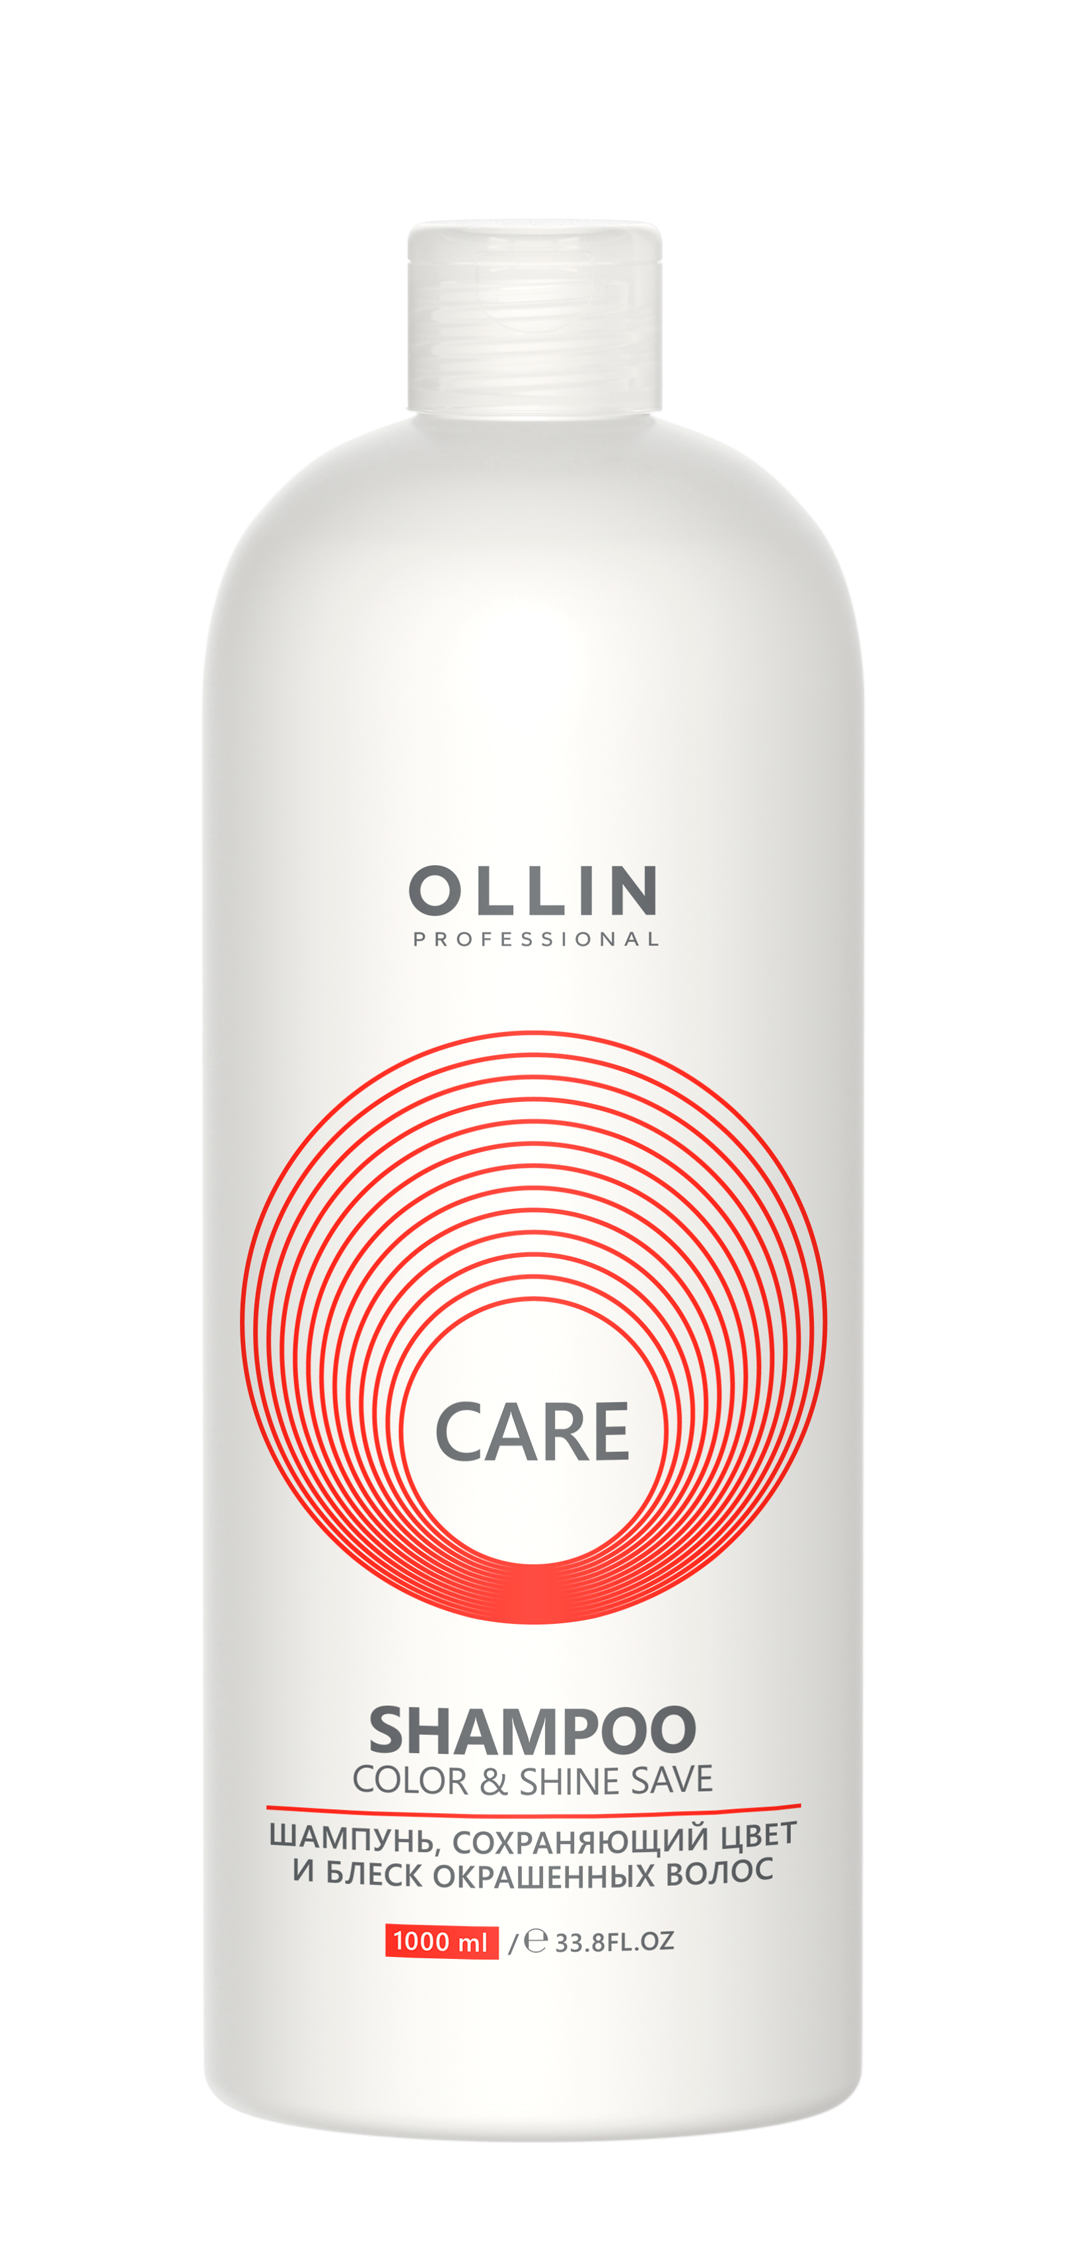 OLLIN CARE Шампунь, сохраняющий цвет 1000мл и блеск окрашенных волос